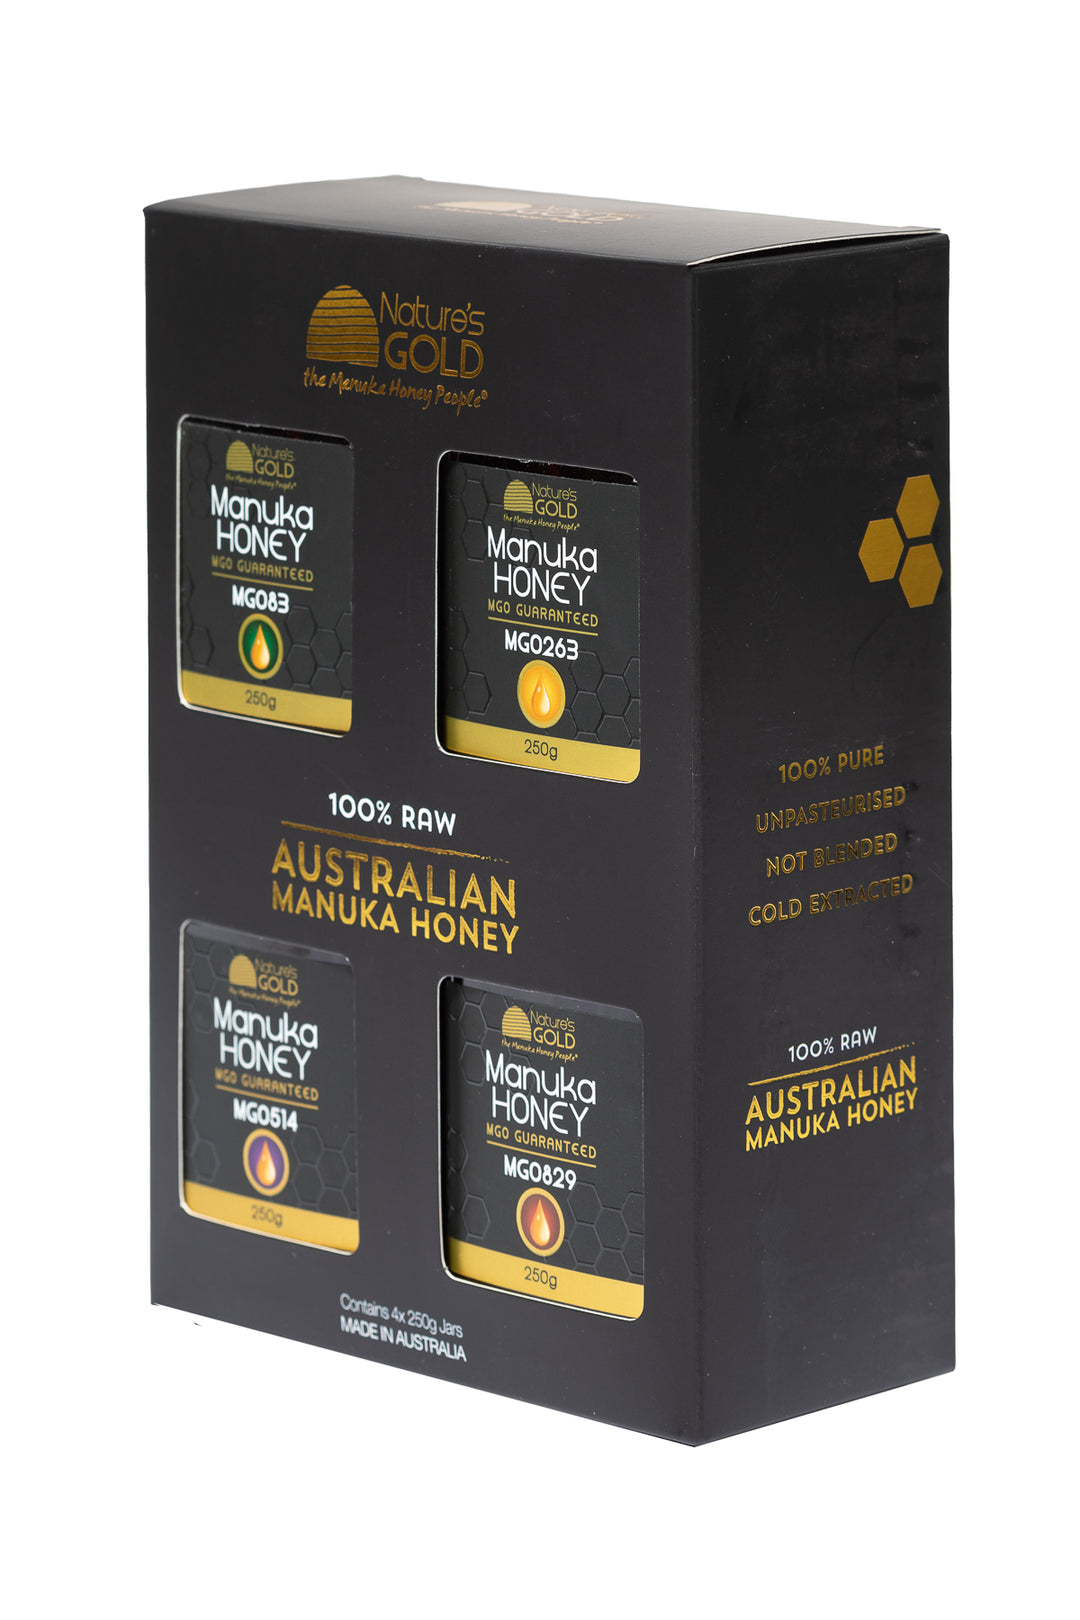 حزمة الهدايا - أستراليا Manuka Honey X MGO 83 ، 263 ، 514 و 829